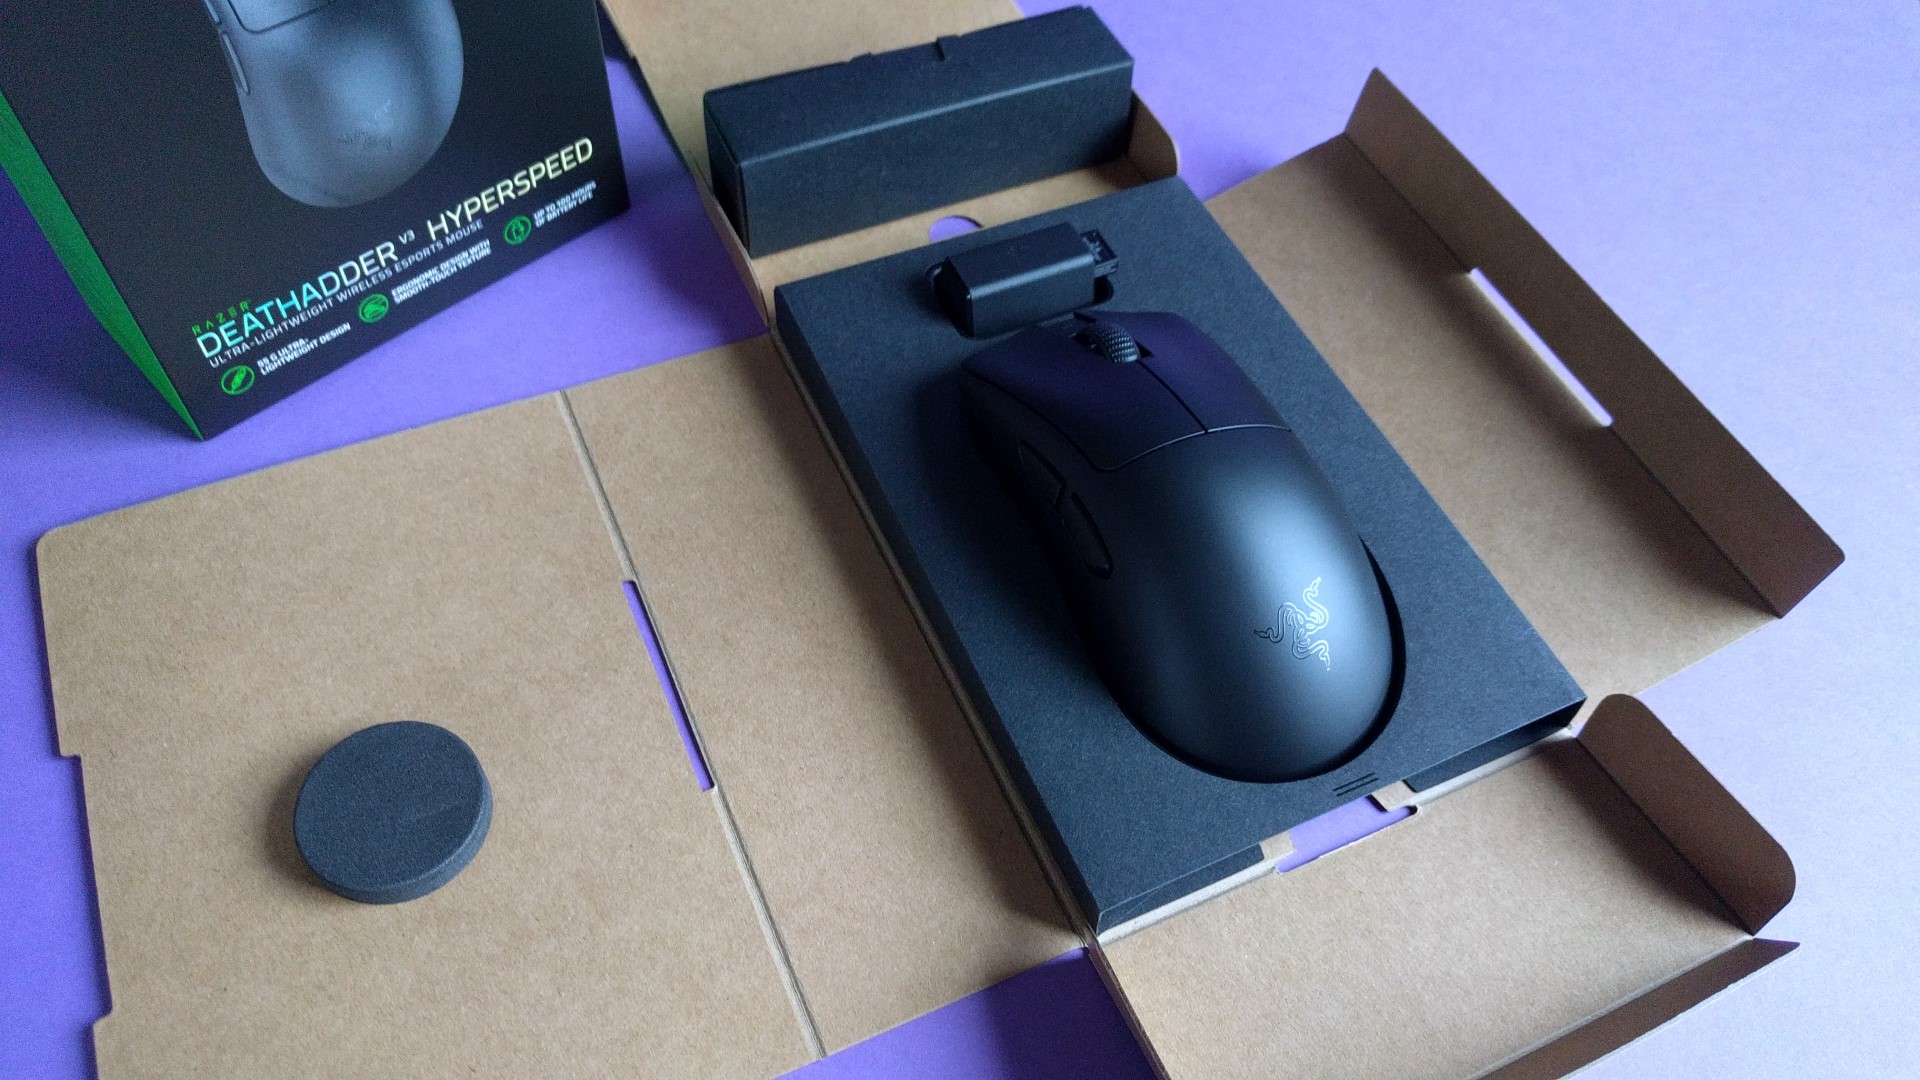 Hands-on: Wir haben uns die neuste Razer-Maus angesehen und fassen alles Wichtige für euch zusammen